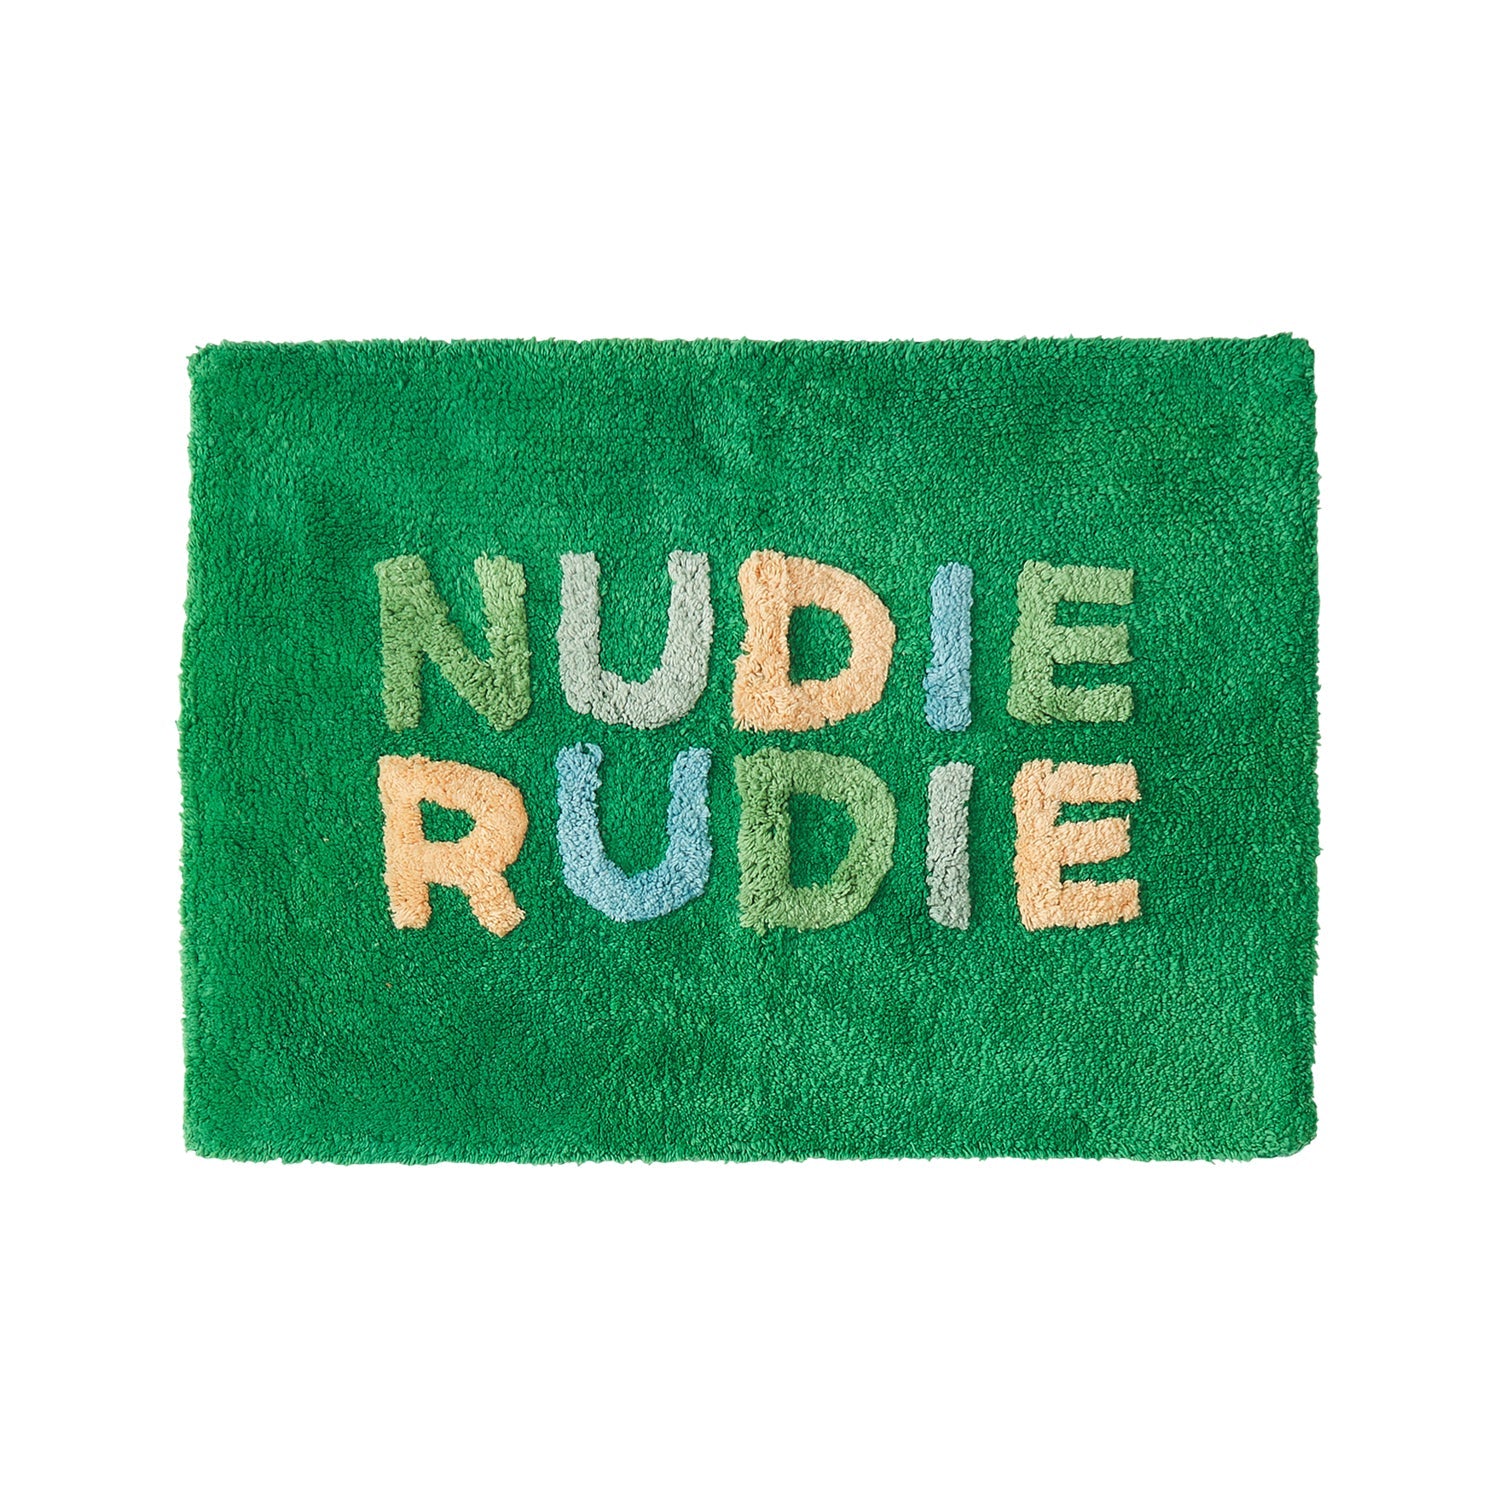 Nudie Rudie Bath Mat Mini | Perilla